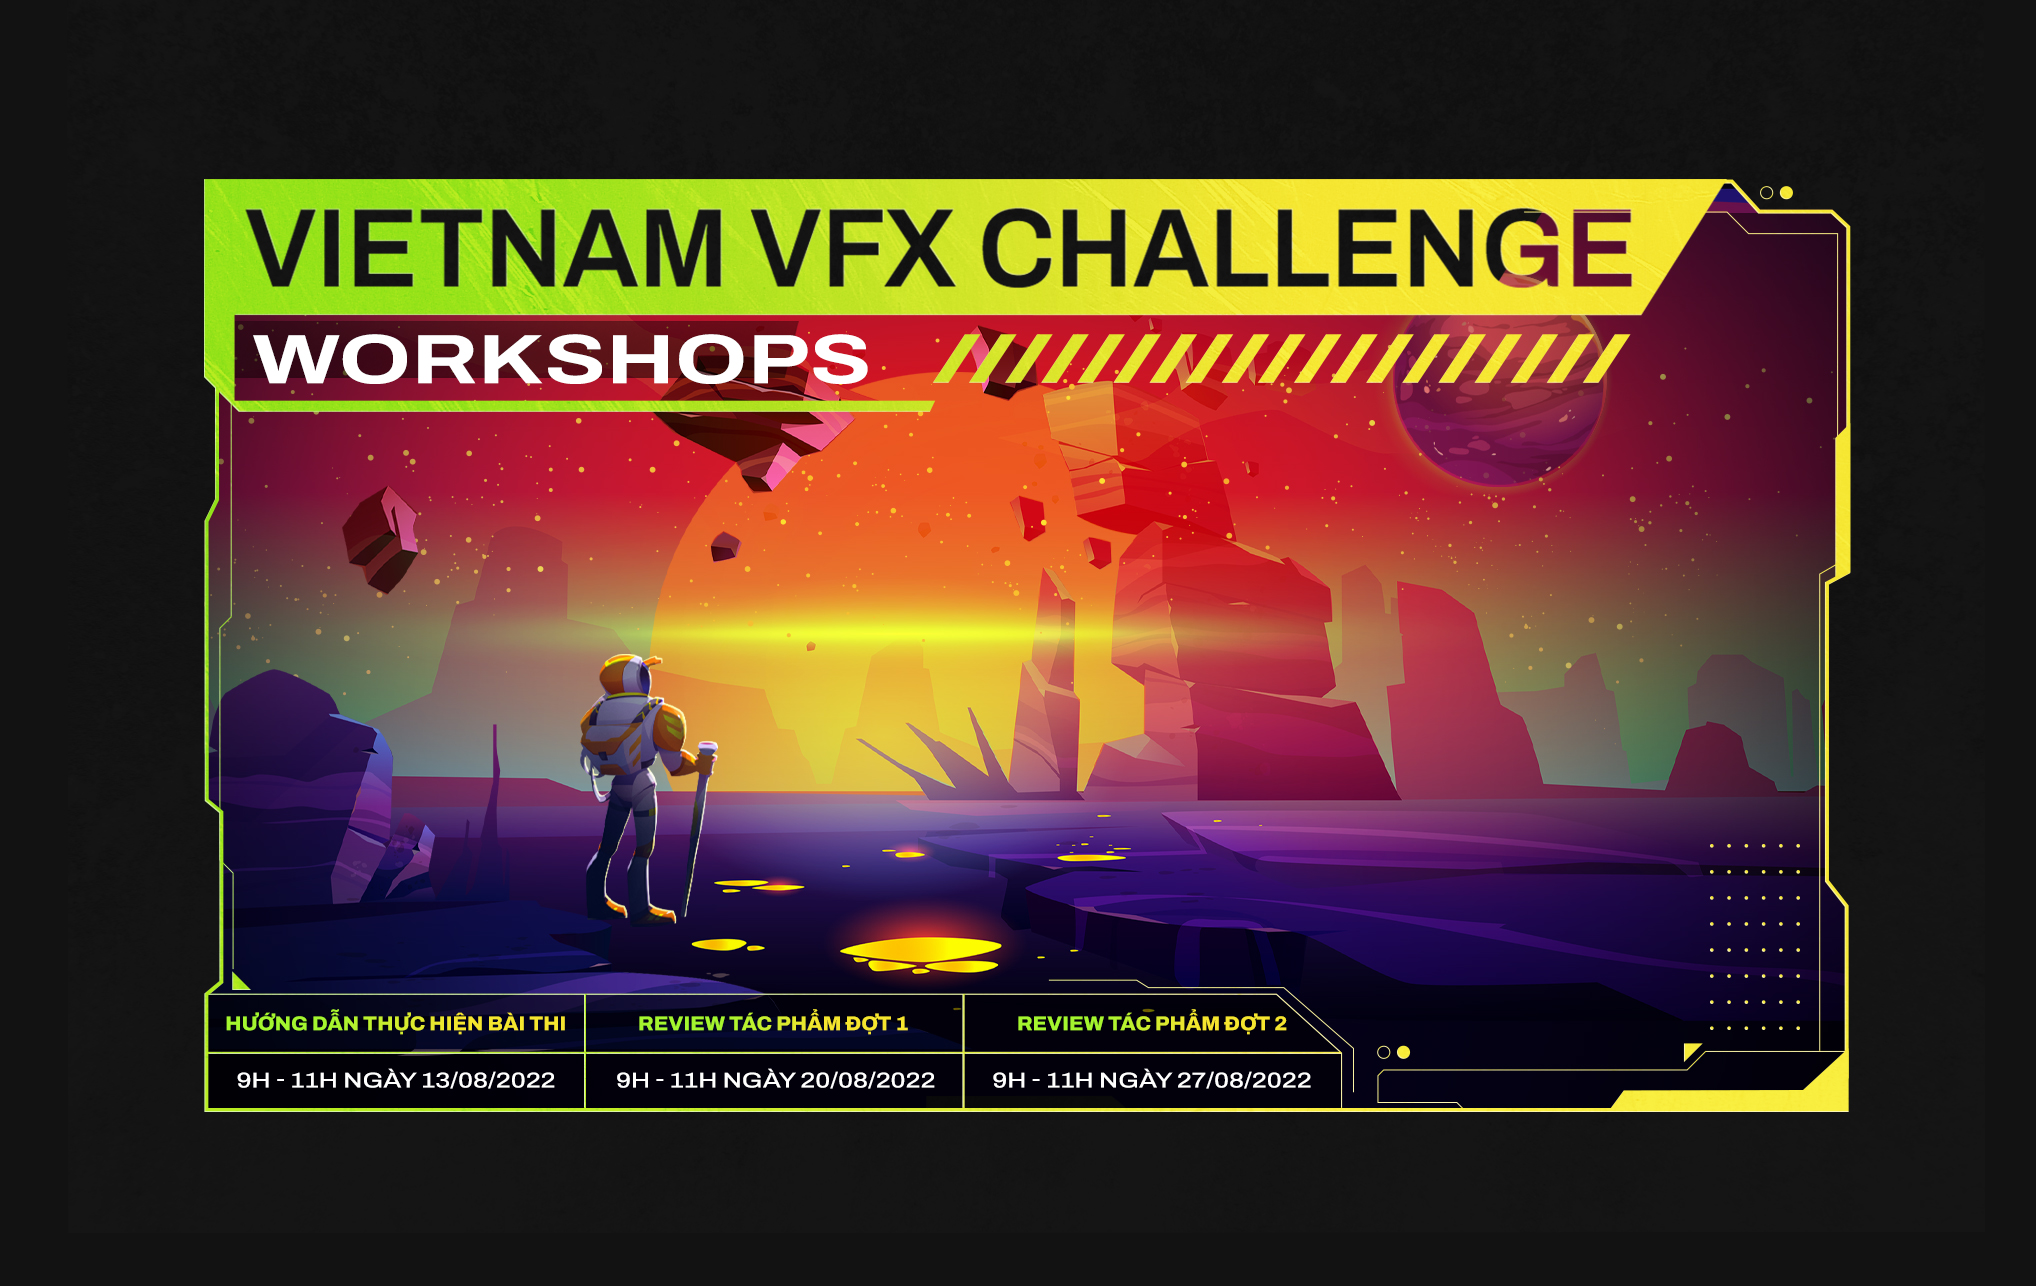 thumb-series-workshop-vietnam-vfx-challenge-hoan-thien-ky-nang-va-nang-cao-chat-luong-bai-thi